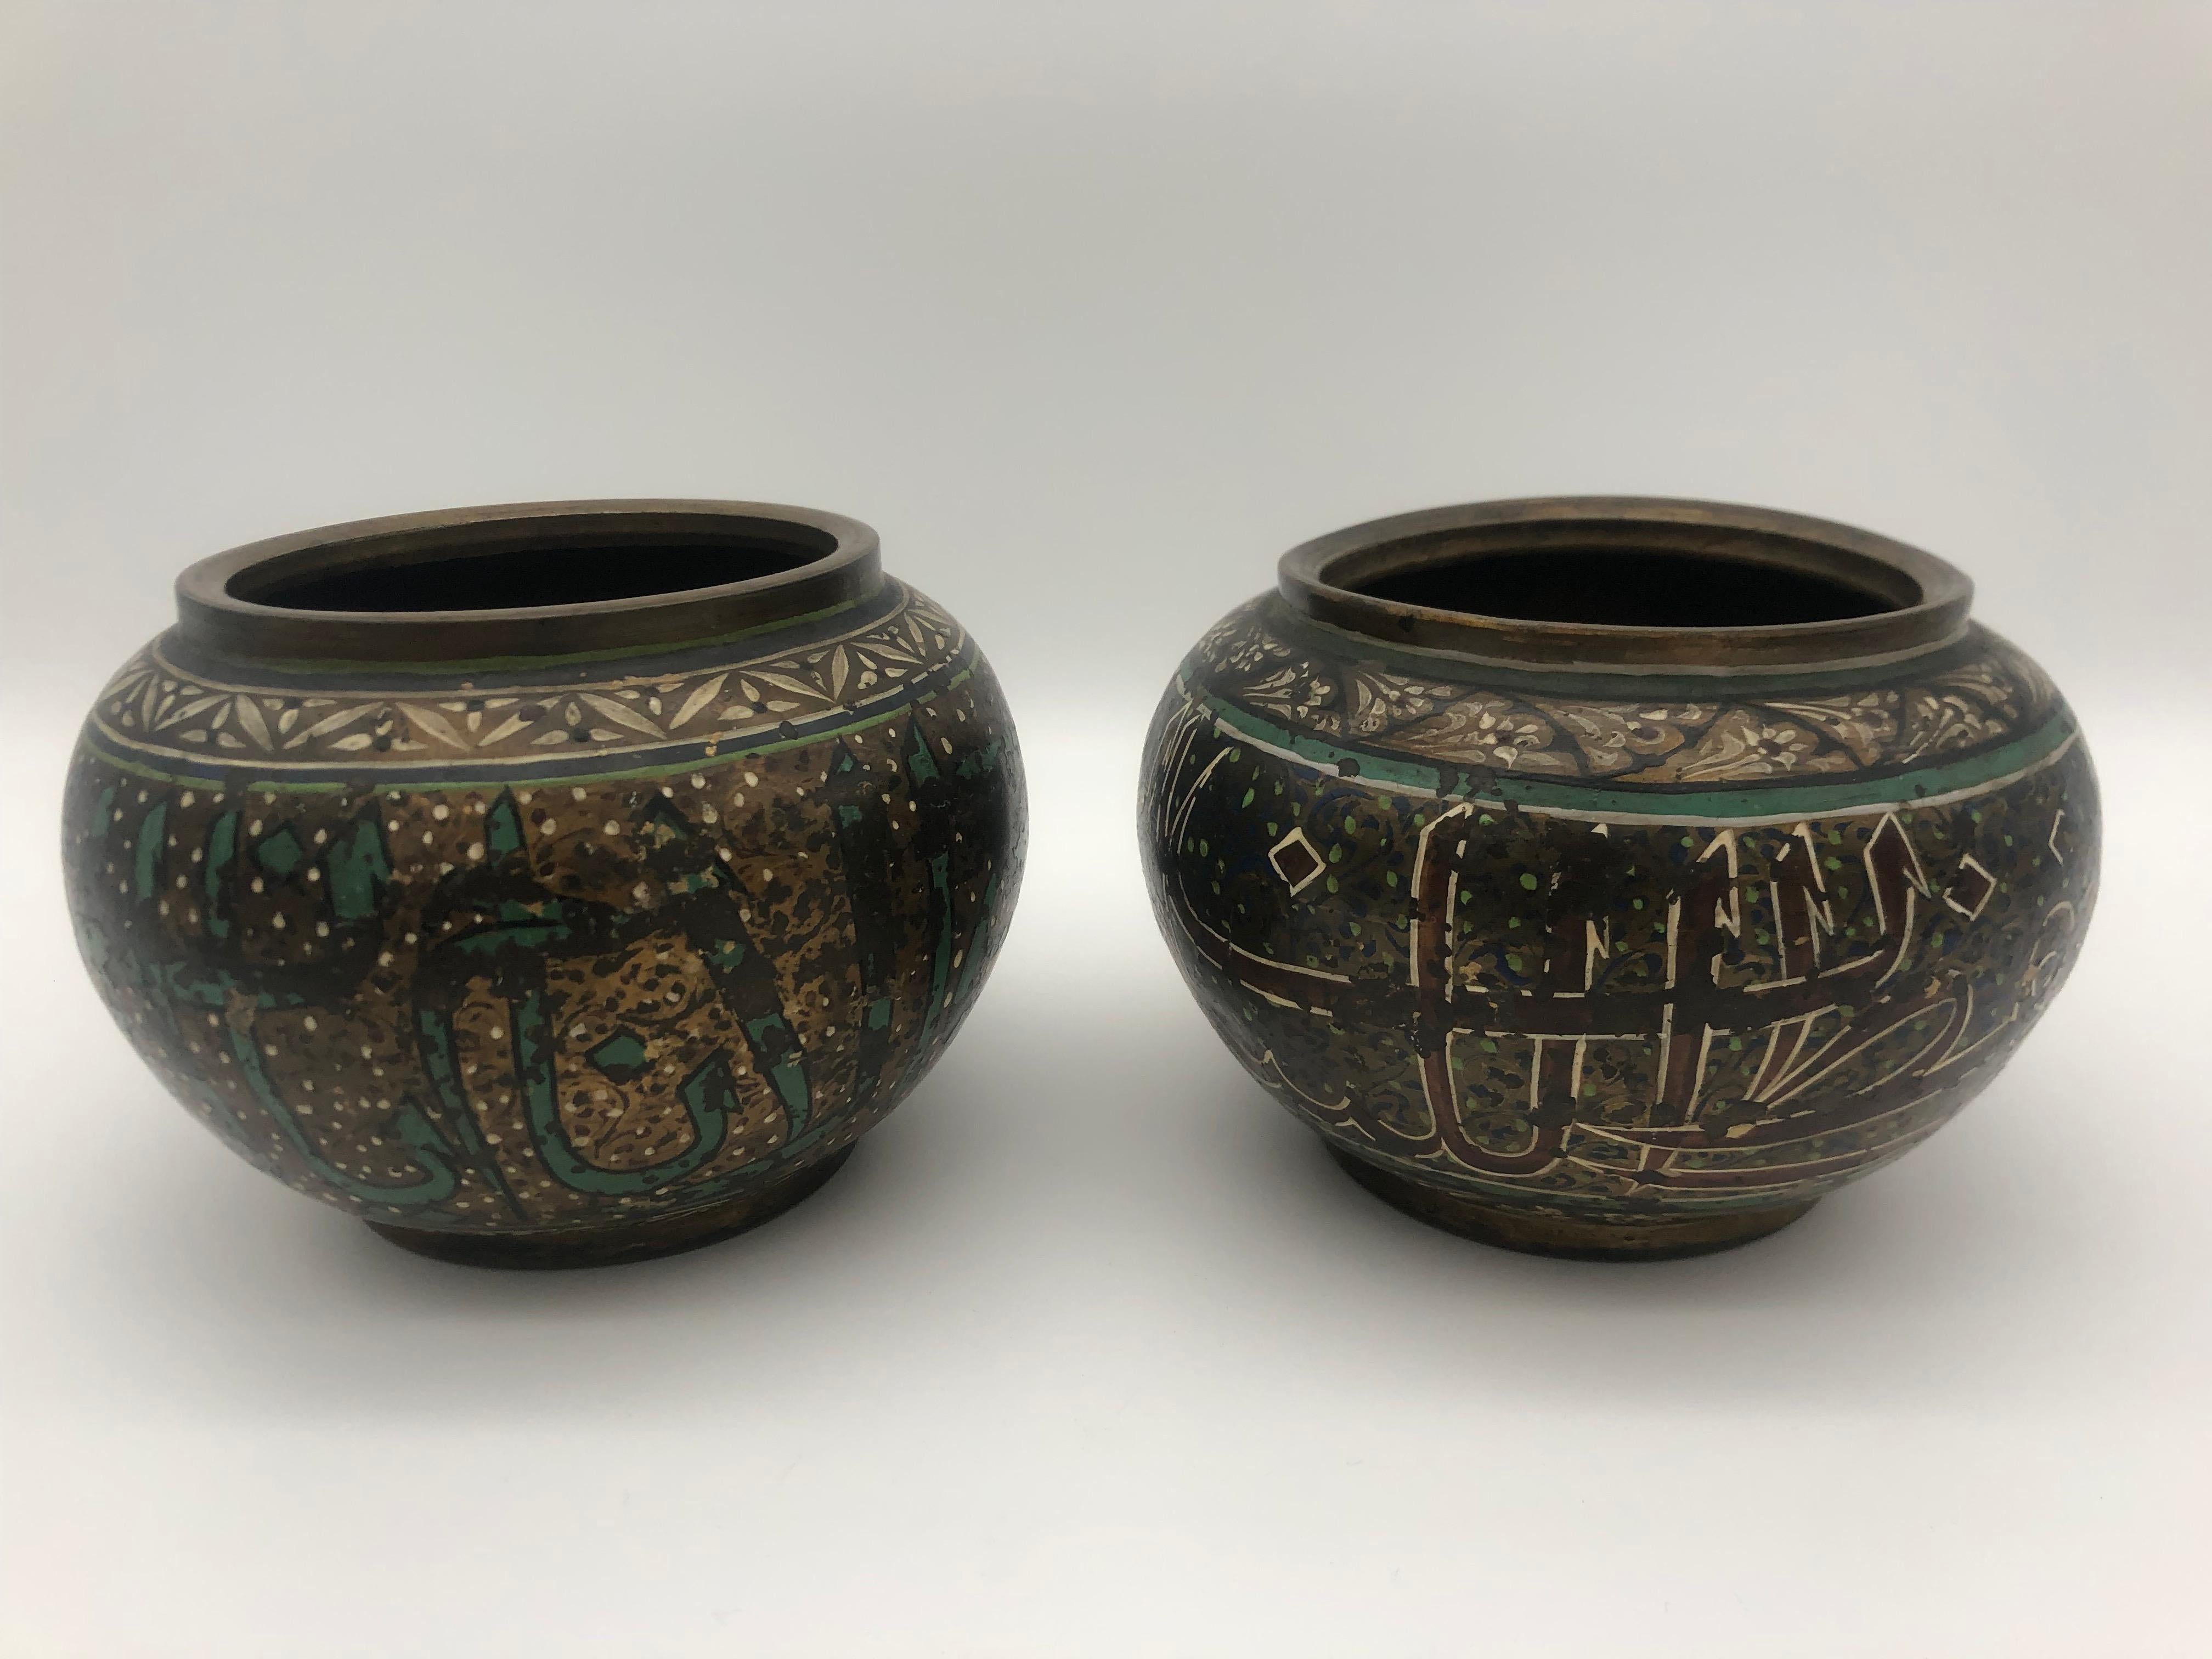 Ein Fundpaar osmanischer Messingvasen mit emaillierten Mustern und arabischer Inschrift auf der Oberfläche.
Beide mit alten, mit Tinte geschriebenen Zahlen auf der Unterseite.

Sie sind in gutem Zustand, obwohl der Lack auf der Oberfläche teilweise